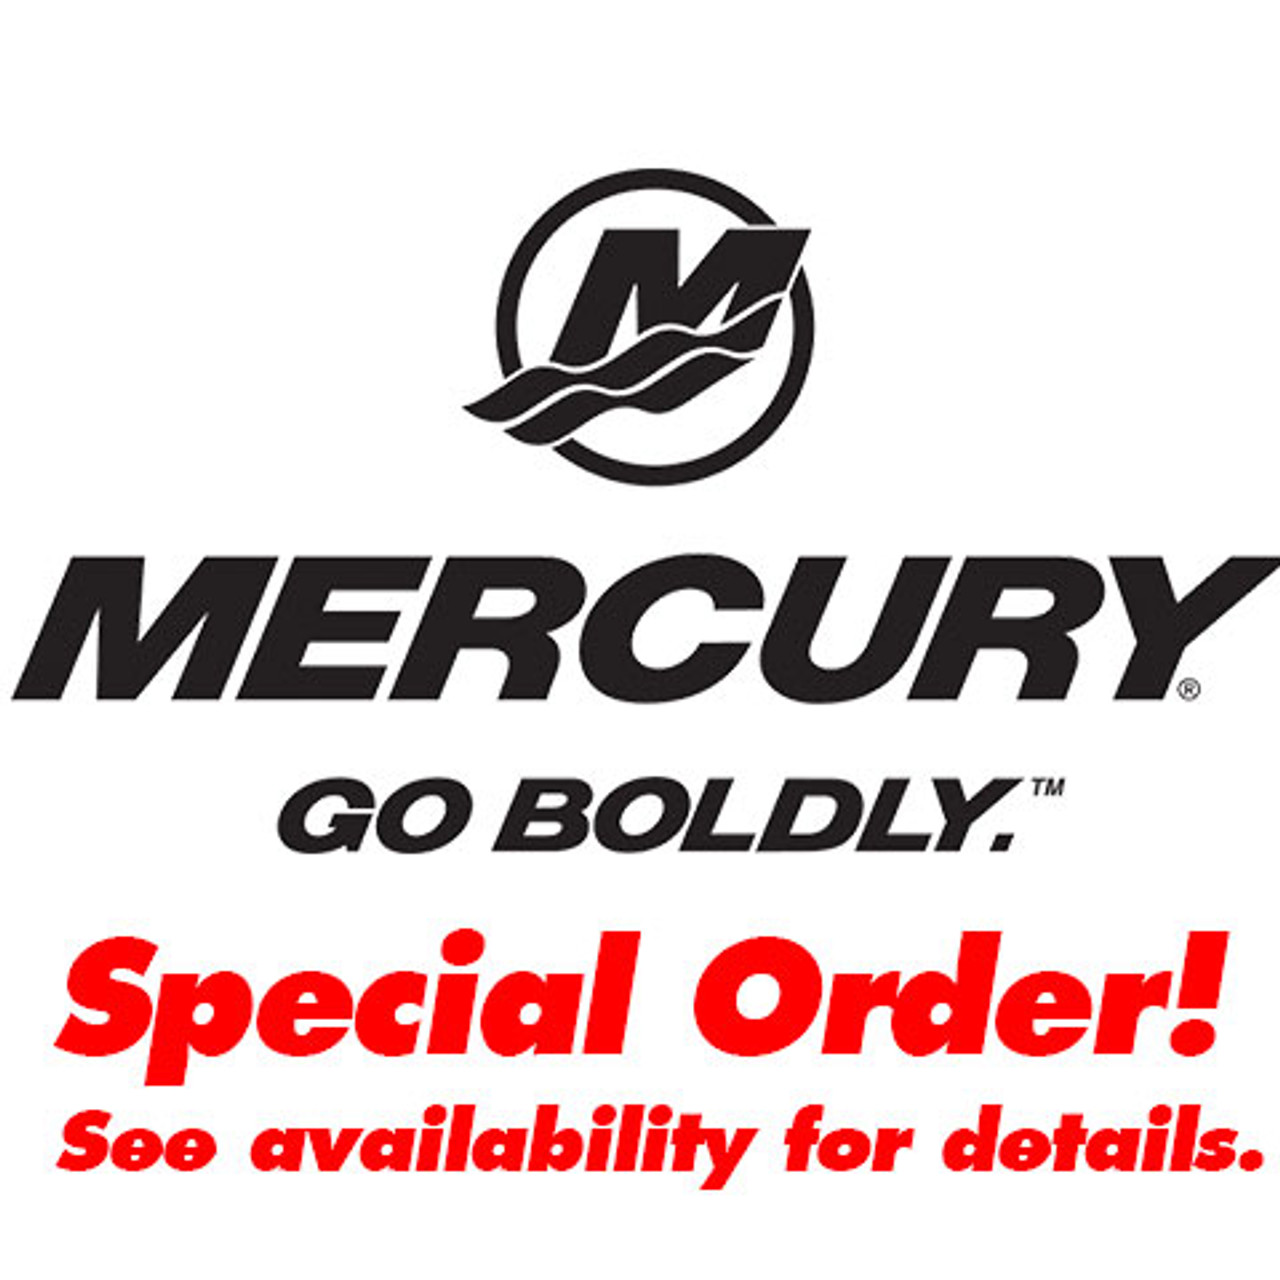 New Mercury Mercruiser Quicksilver Oem Part # 26-881613001 Seal 